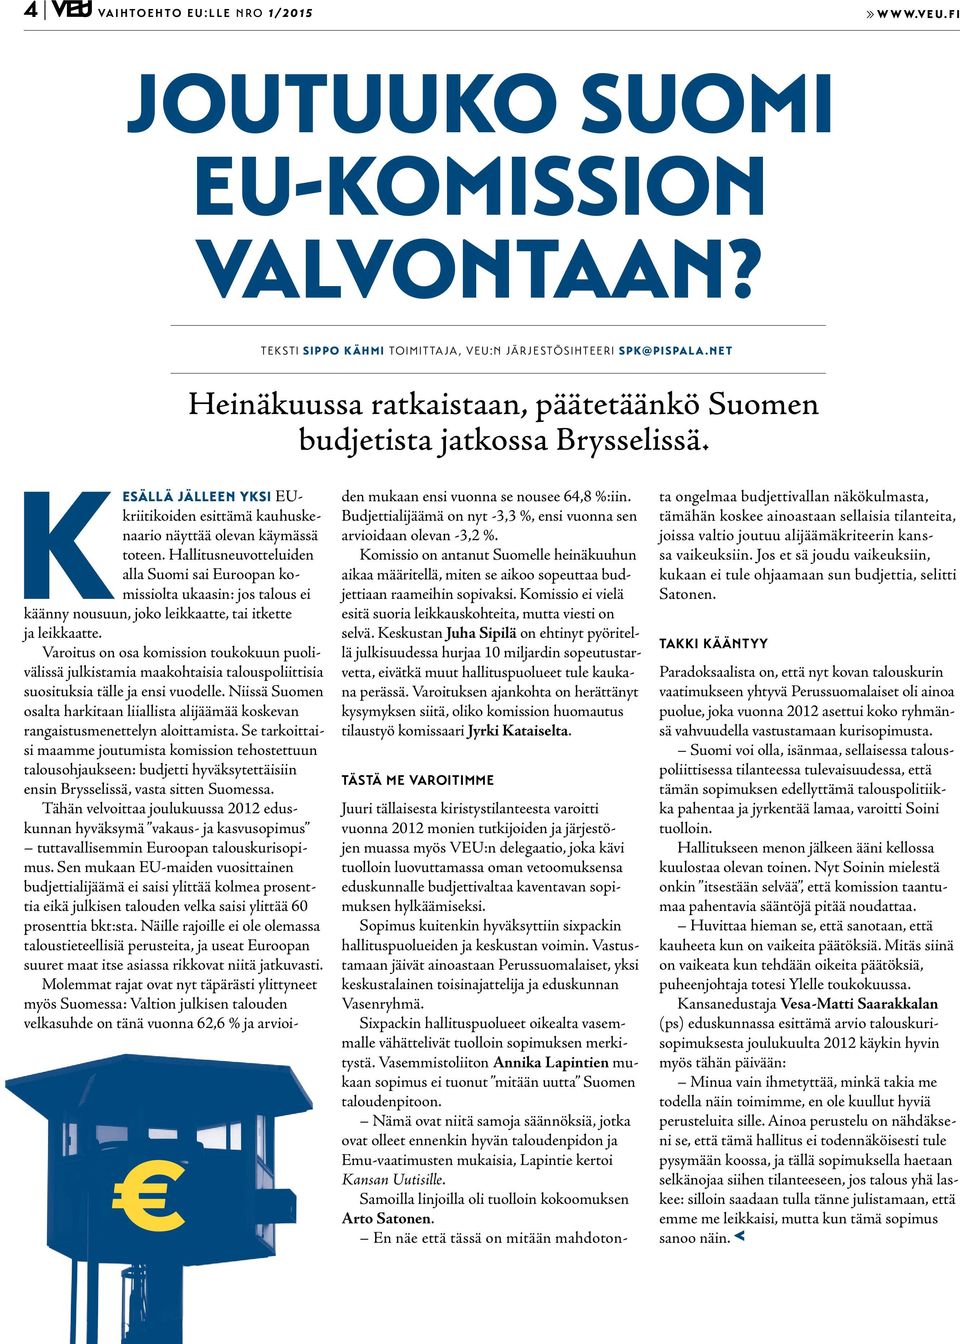 Hallitusneuvotteluiden alla Suomi sai Euroopan komissiolta ukaasin: jos talous ei käänny nousuun, joko leikkaatte, tai itkette ja leikkaatte.